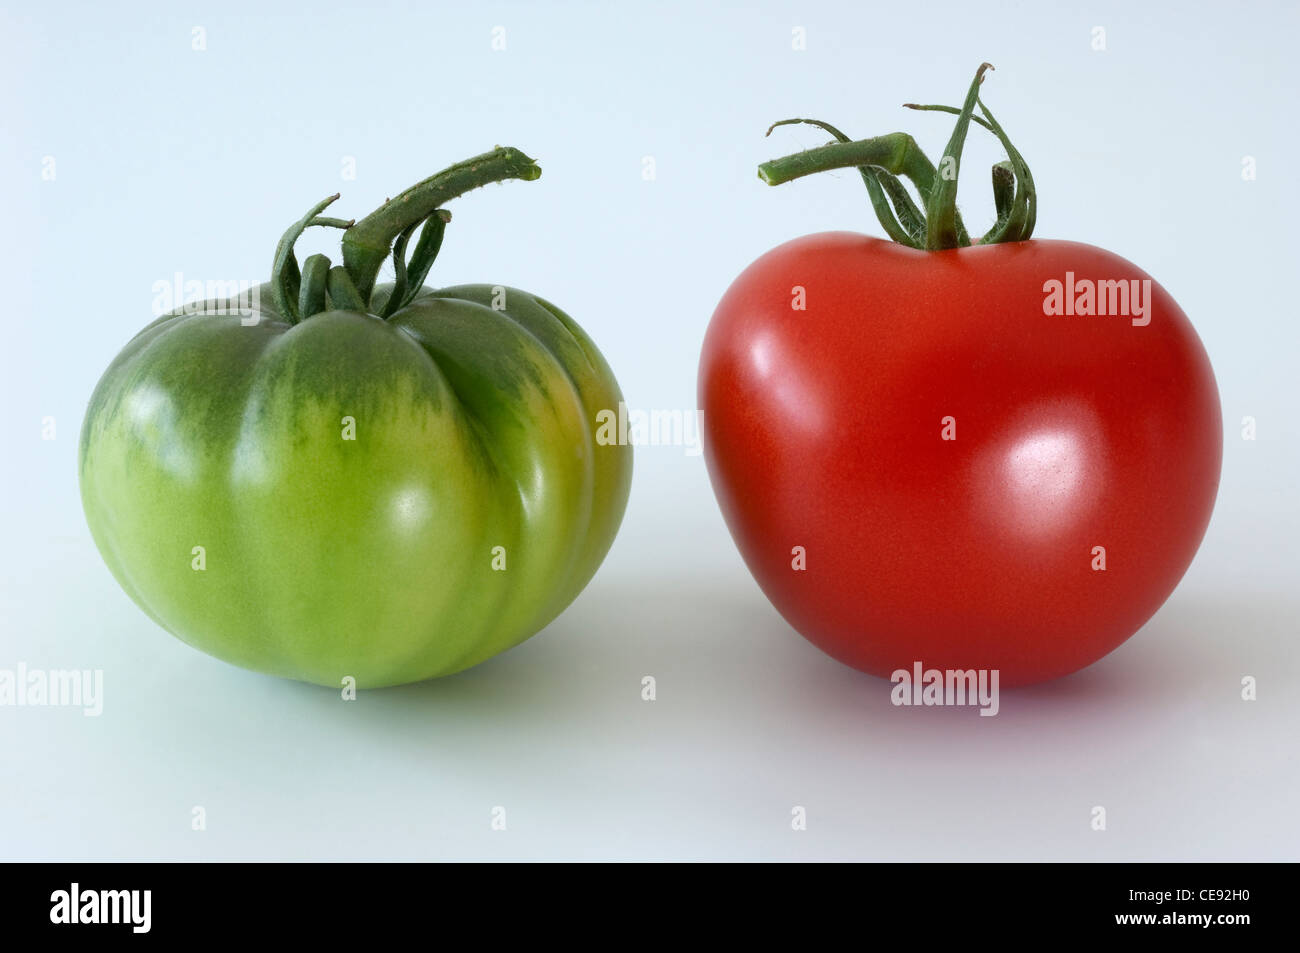 Tomate (Lycopersicon esculentum). Frutas rojas y verdes. Studio picture contra un fondo blanco. Foto de stock